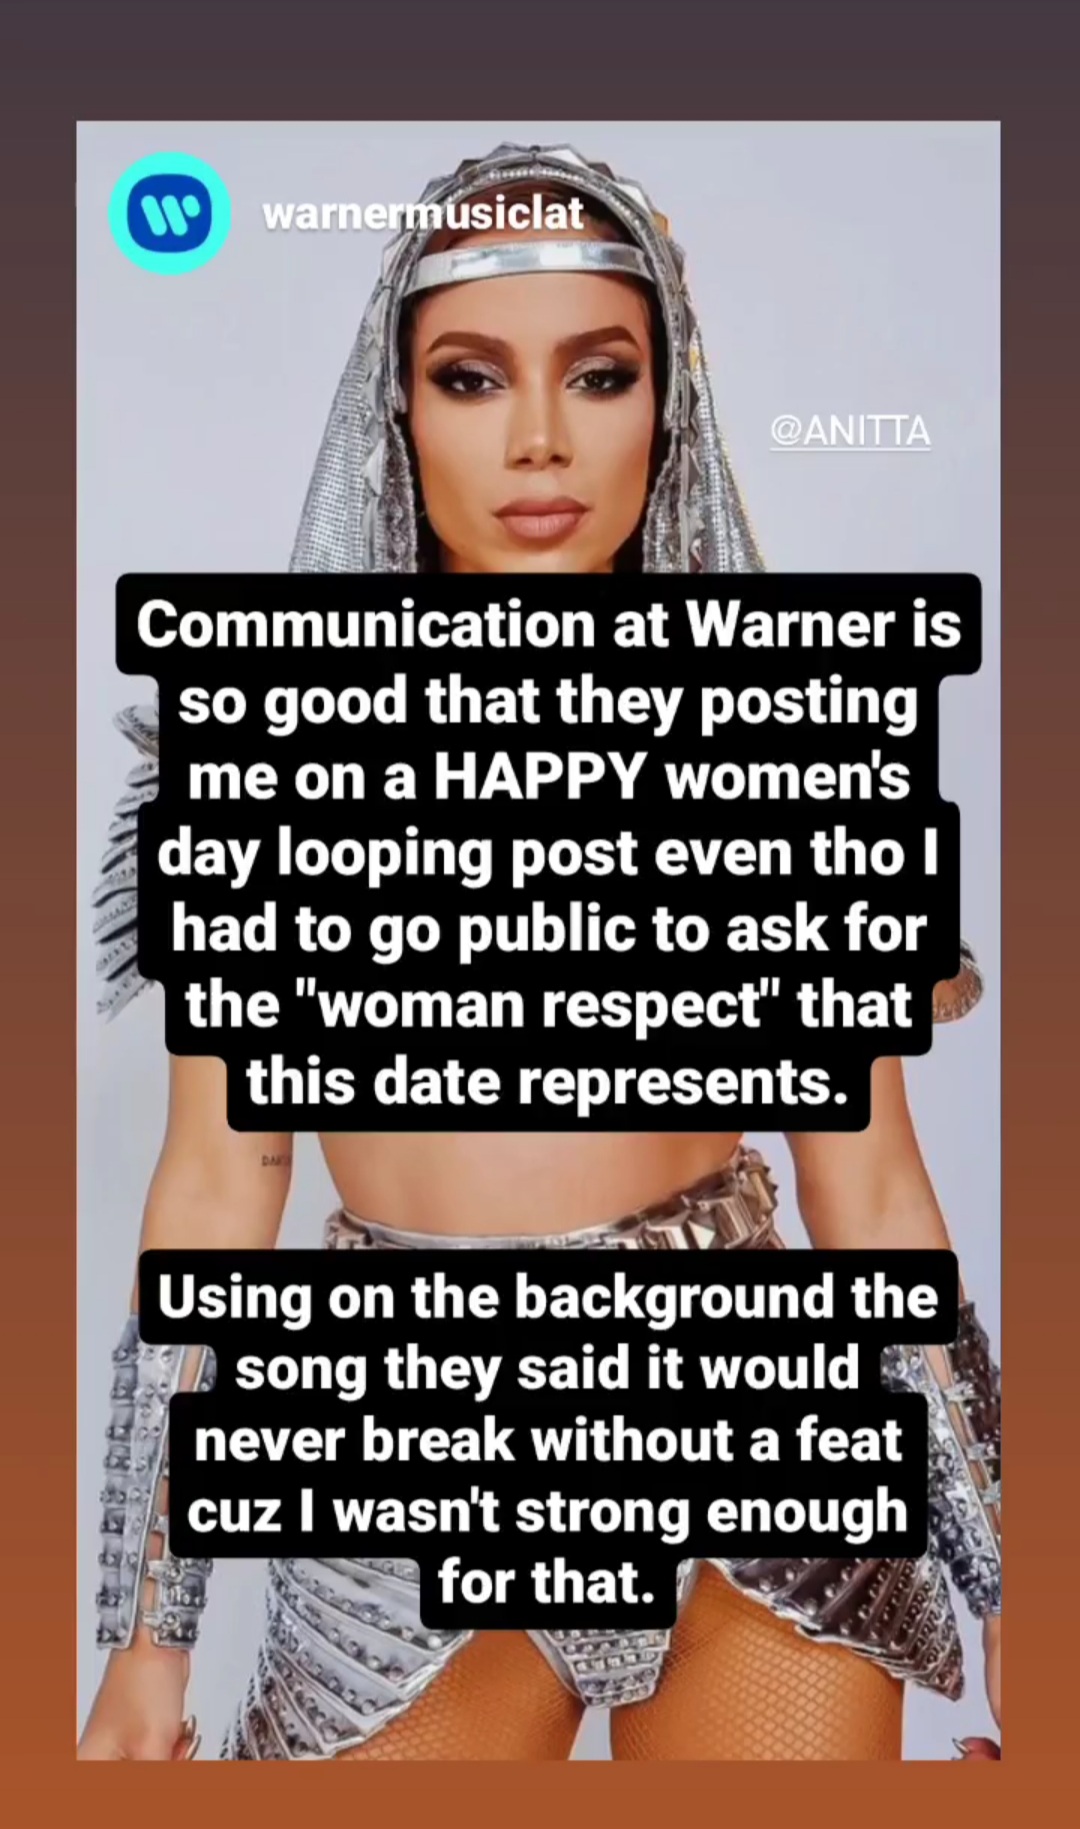 Warner Music celebra Dia Internacional das Mulheres com imagem de Anitta. (Foto: Reprodução/ Instagram)